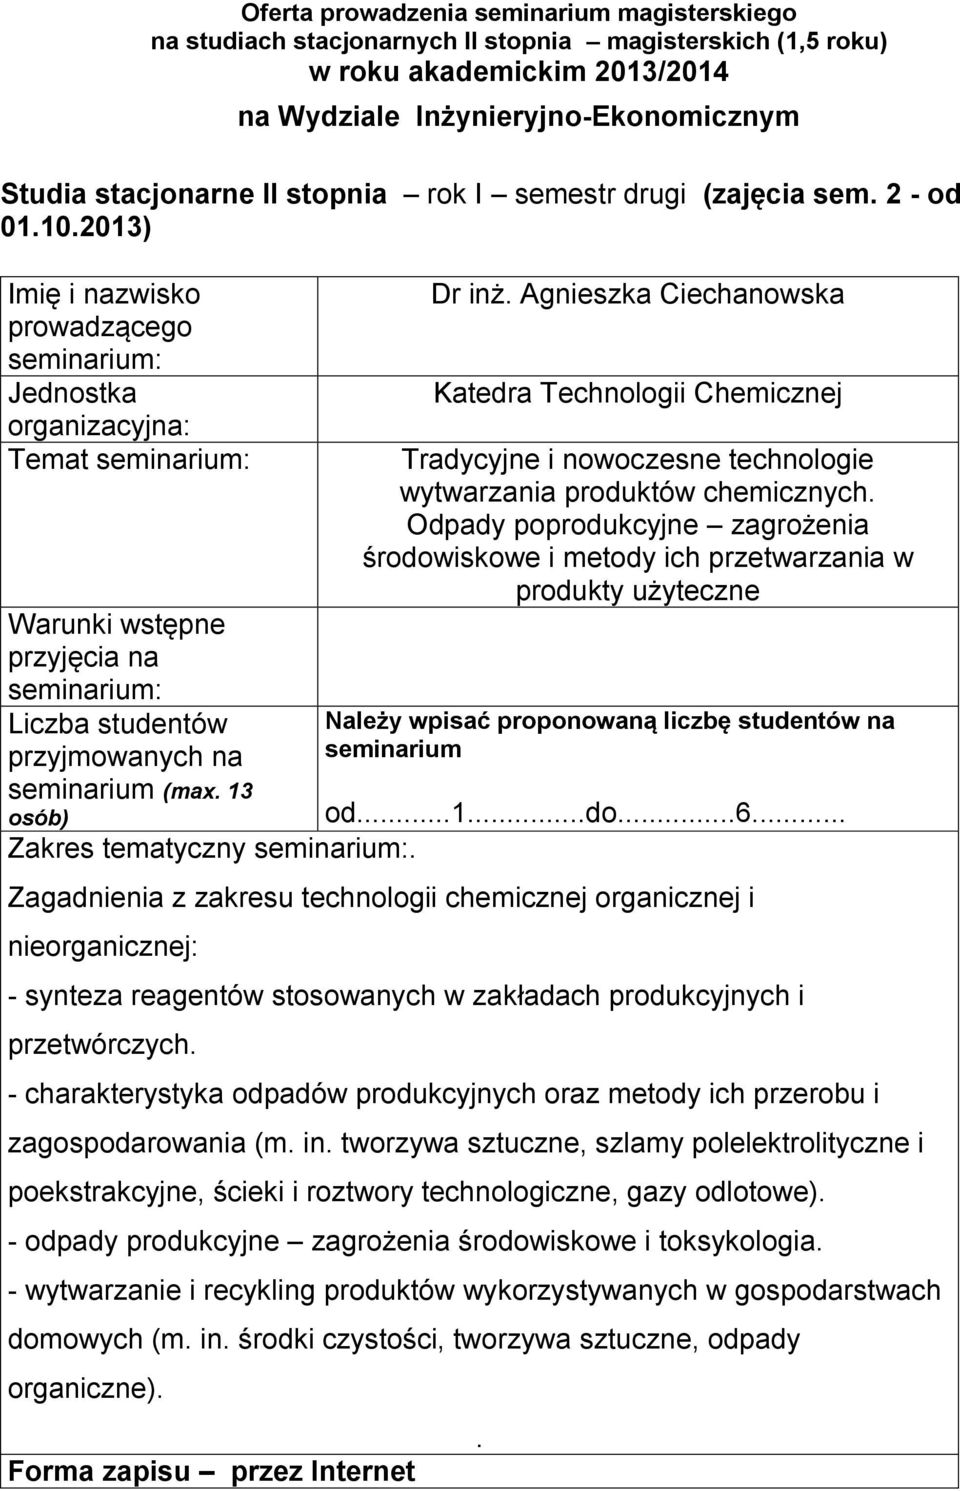 od1do6 Zagadnienia z zakresu technologii chemicznej organicznej i nieorganicznej: - synteza reagentów stosowanych w zakładach produkcyjnych i przetwórczych - charakterystyka odpadów produkcyjnych